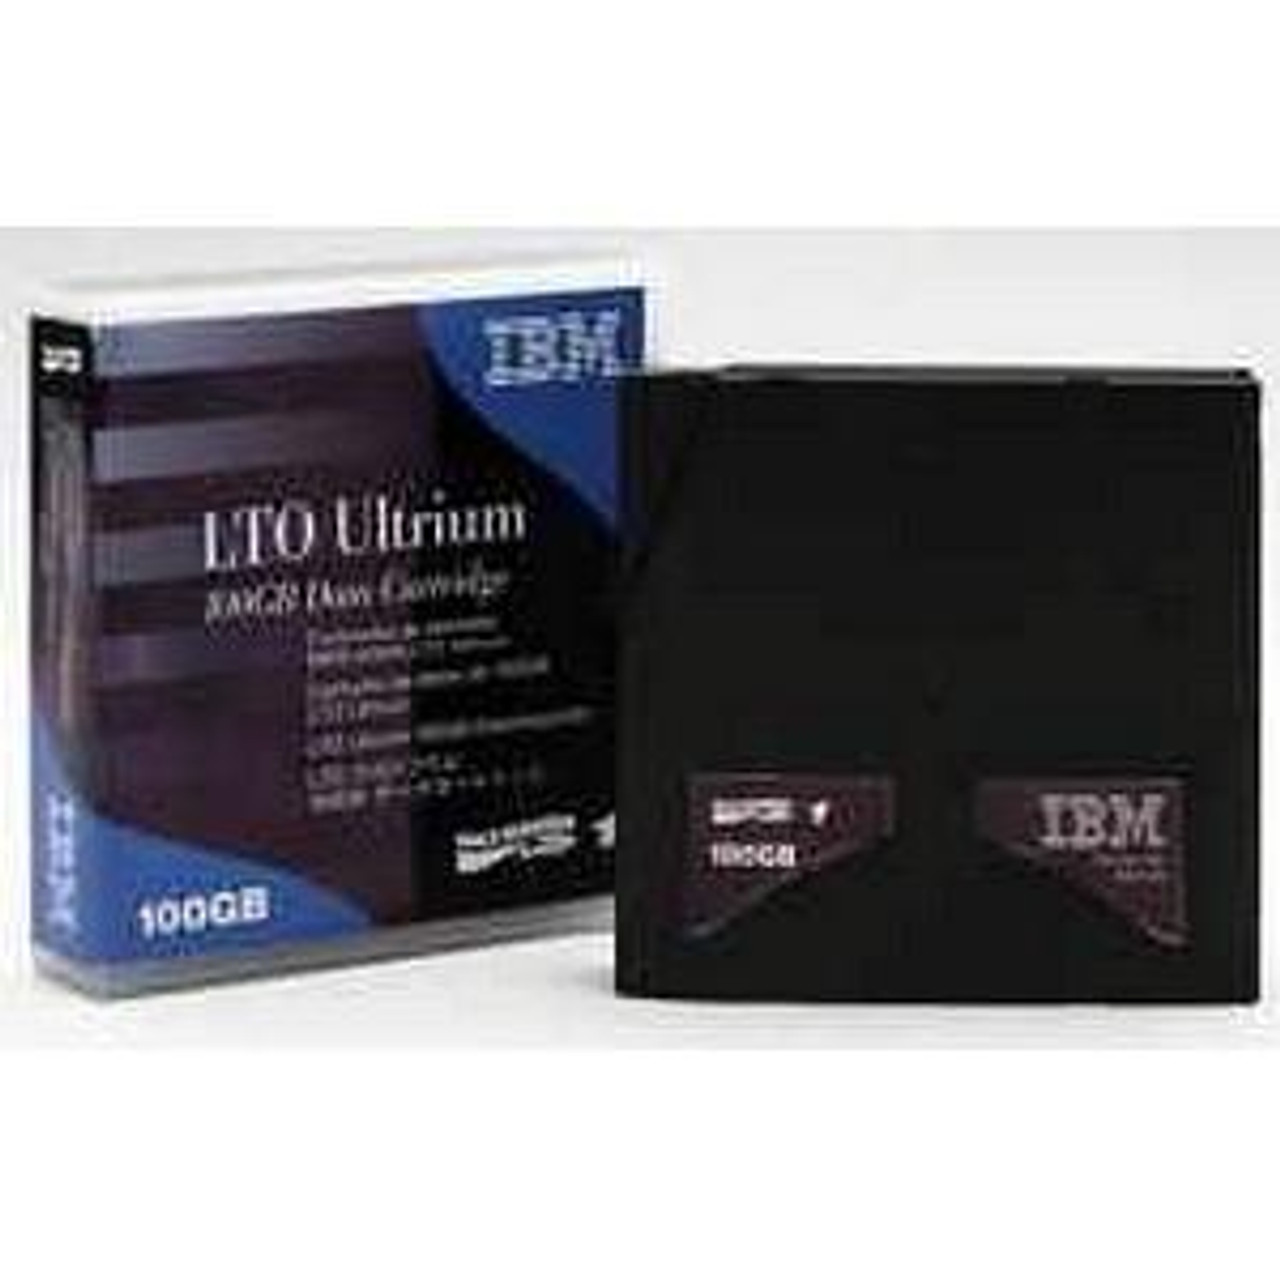 71P9152 - IBM LTO Ultrium Data Cartridge - LTO Ultrium